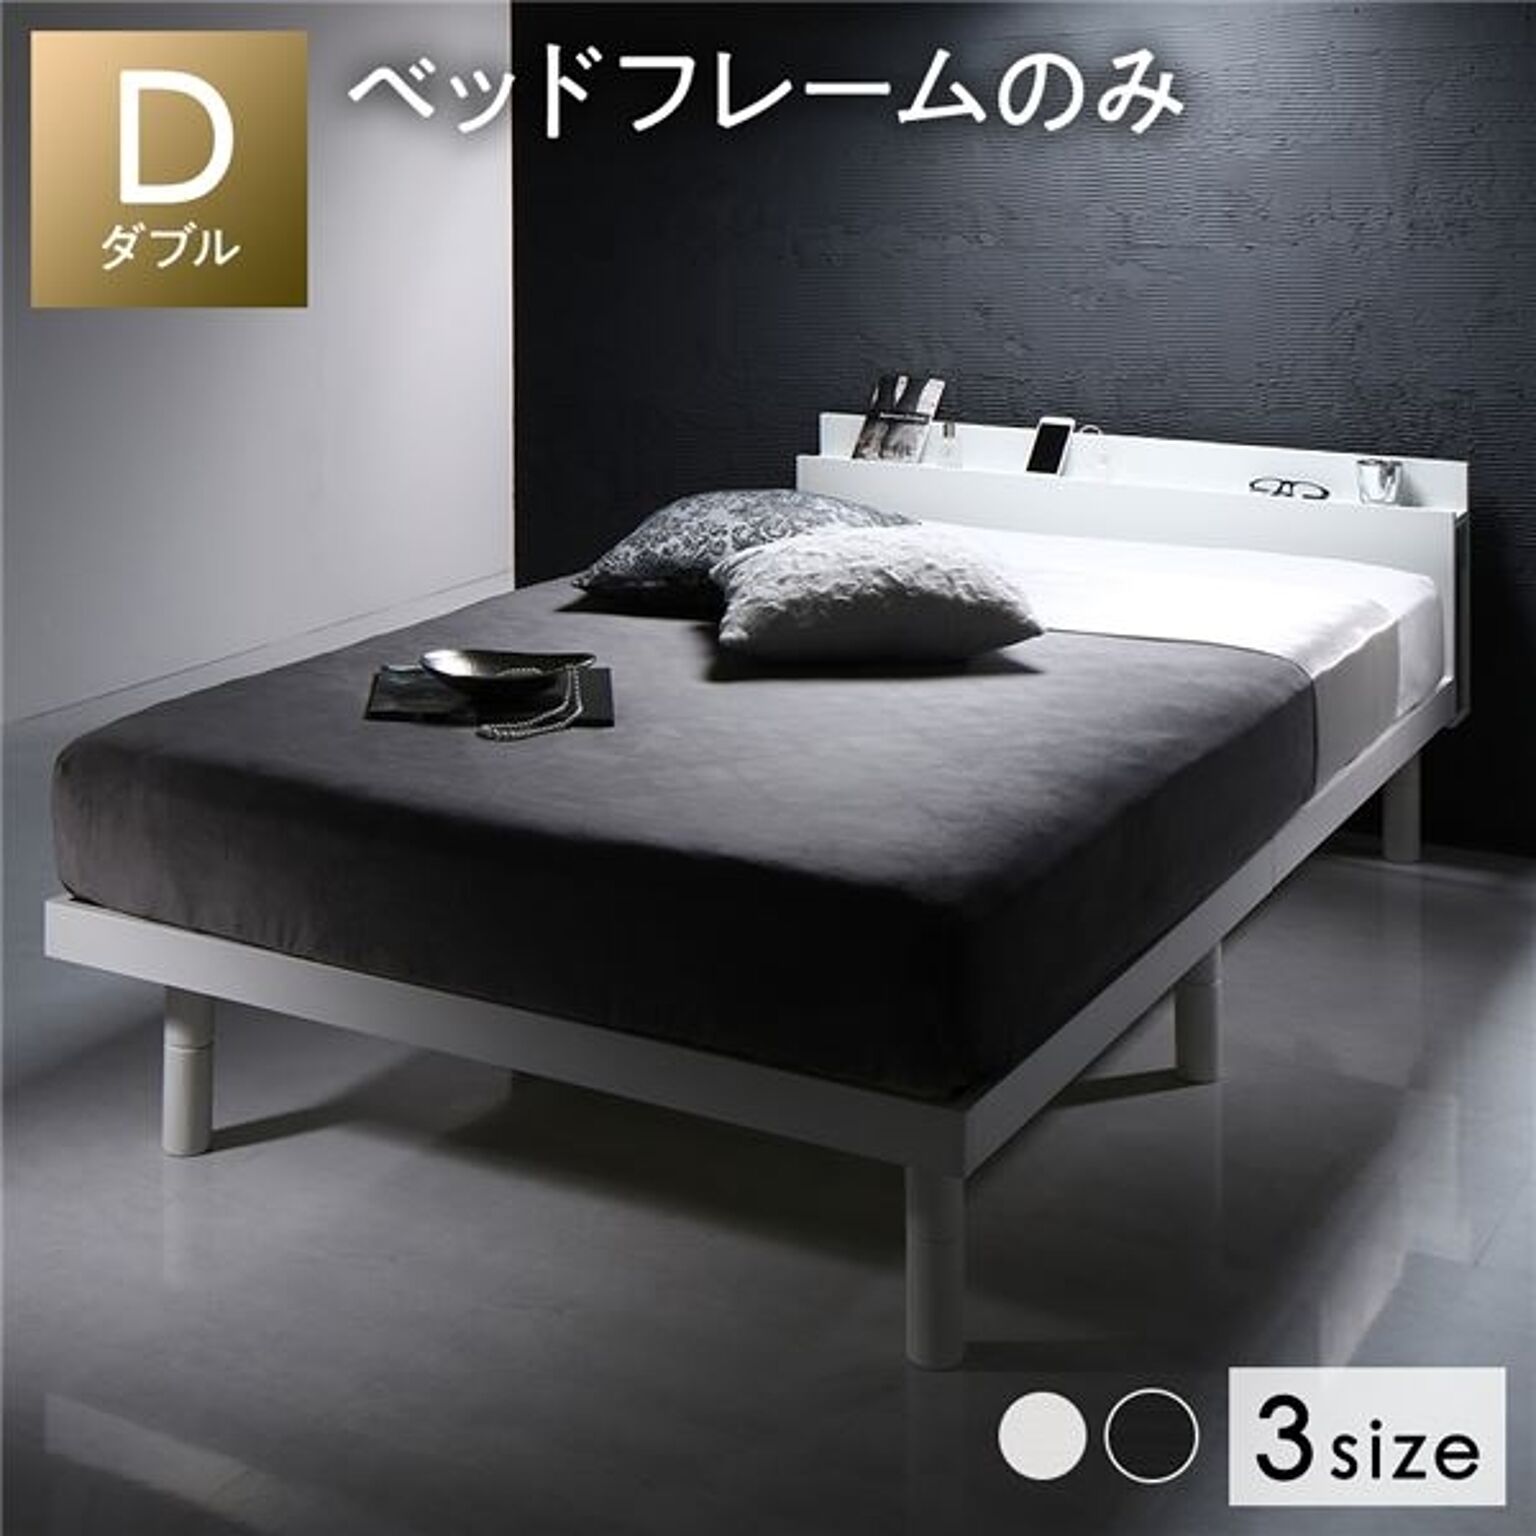 ベッド ダブル ベッドフレームのみ ホワイト すのこ 棚付き コンセント付き スマホスタンド 頑丈 木製 ベッド下収納